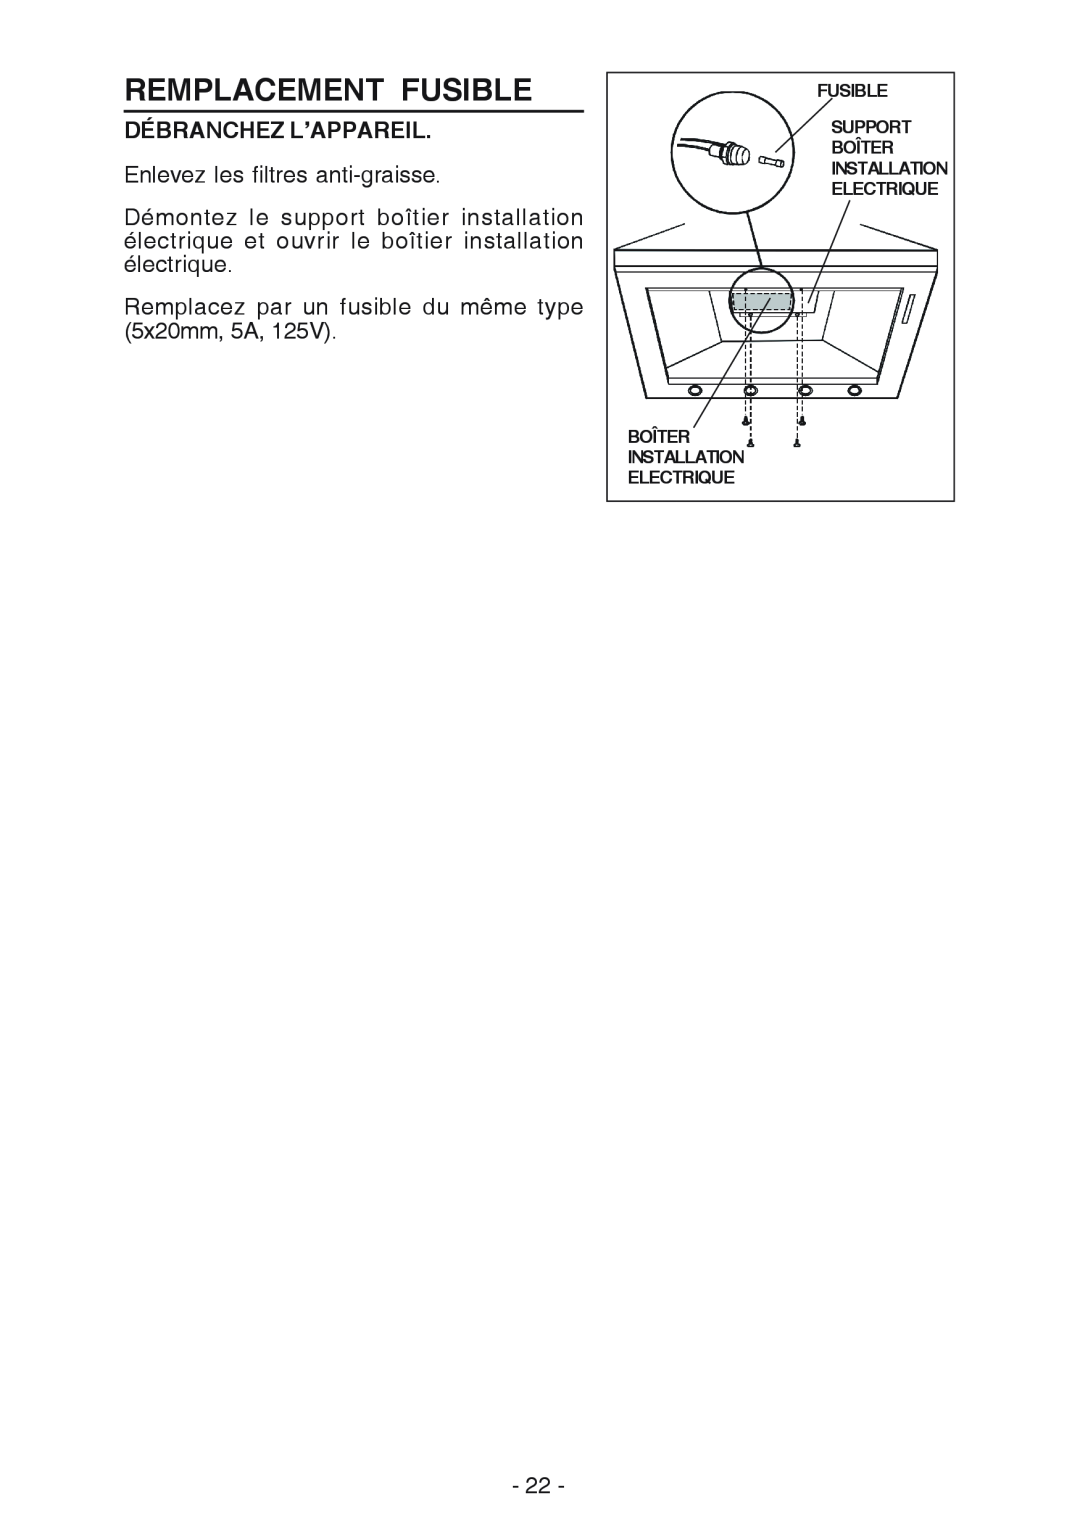 Broan 619004EX manual Remplacement Fusible, Débranchez L’Appareil, Boîter Installation Electrique 